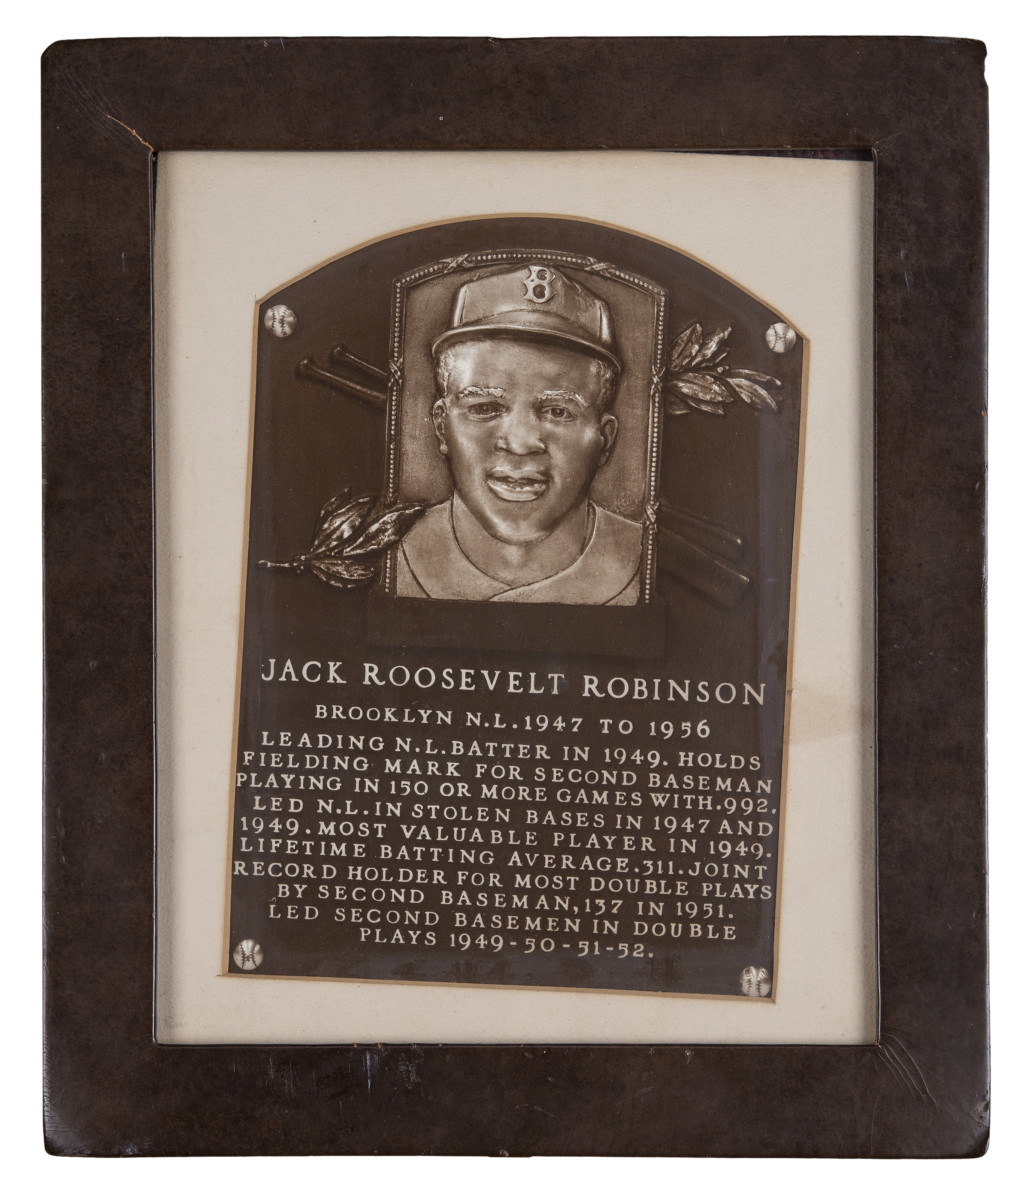 Jackie Robinson's Baseball Hall of Fame plaque.